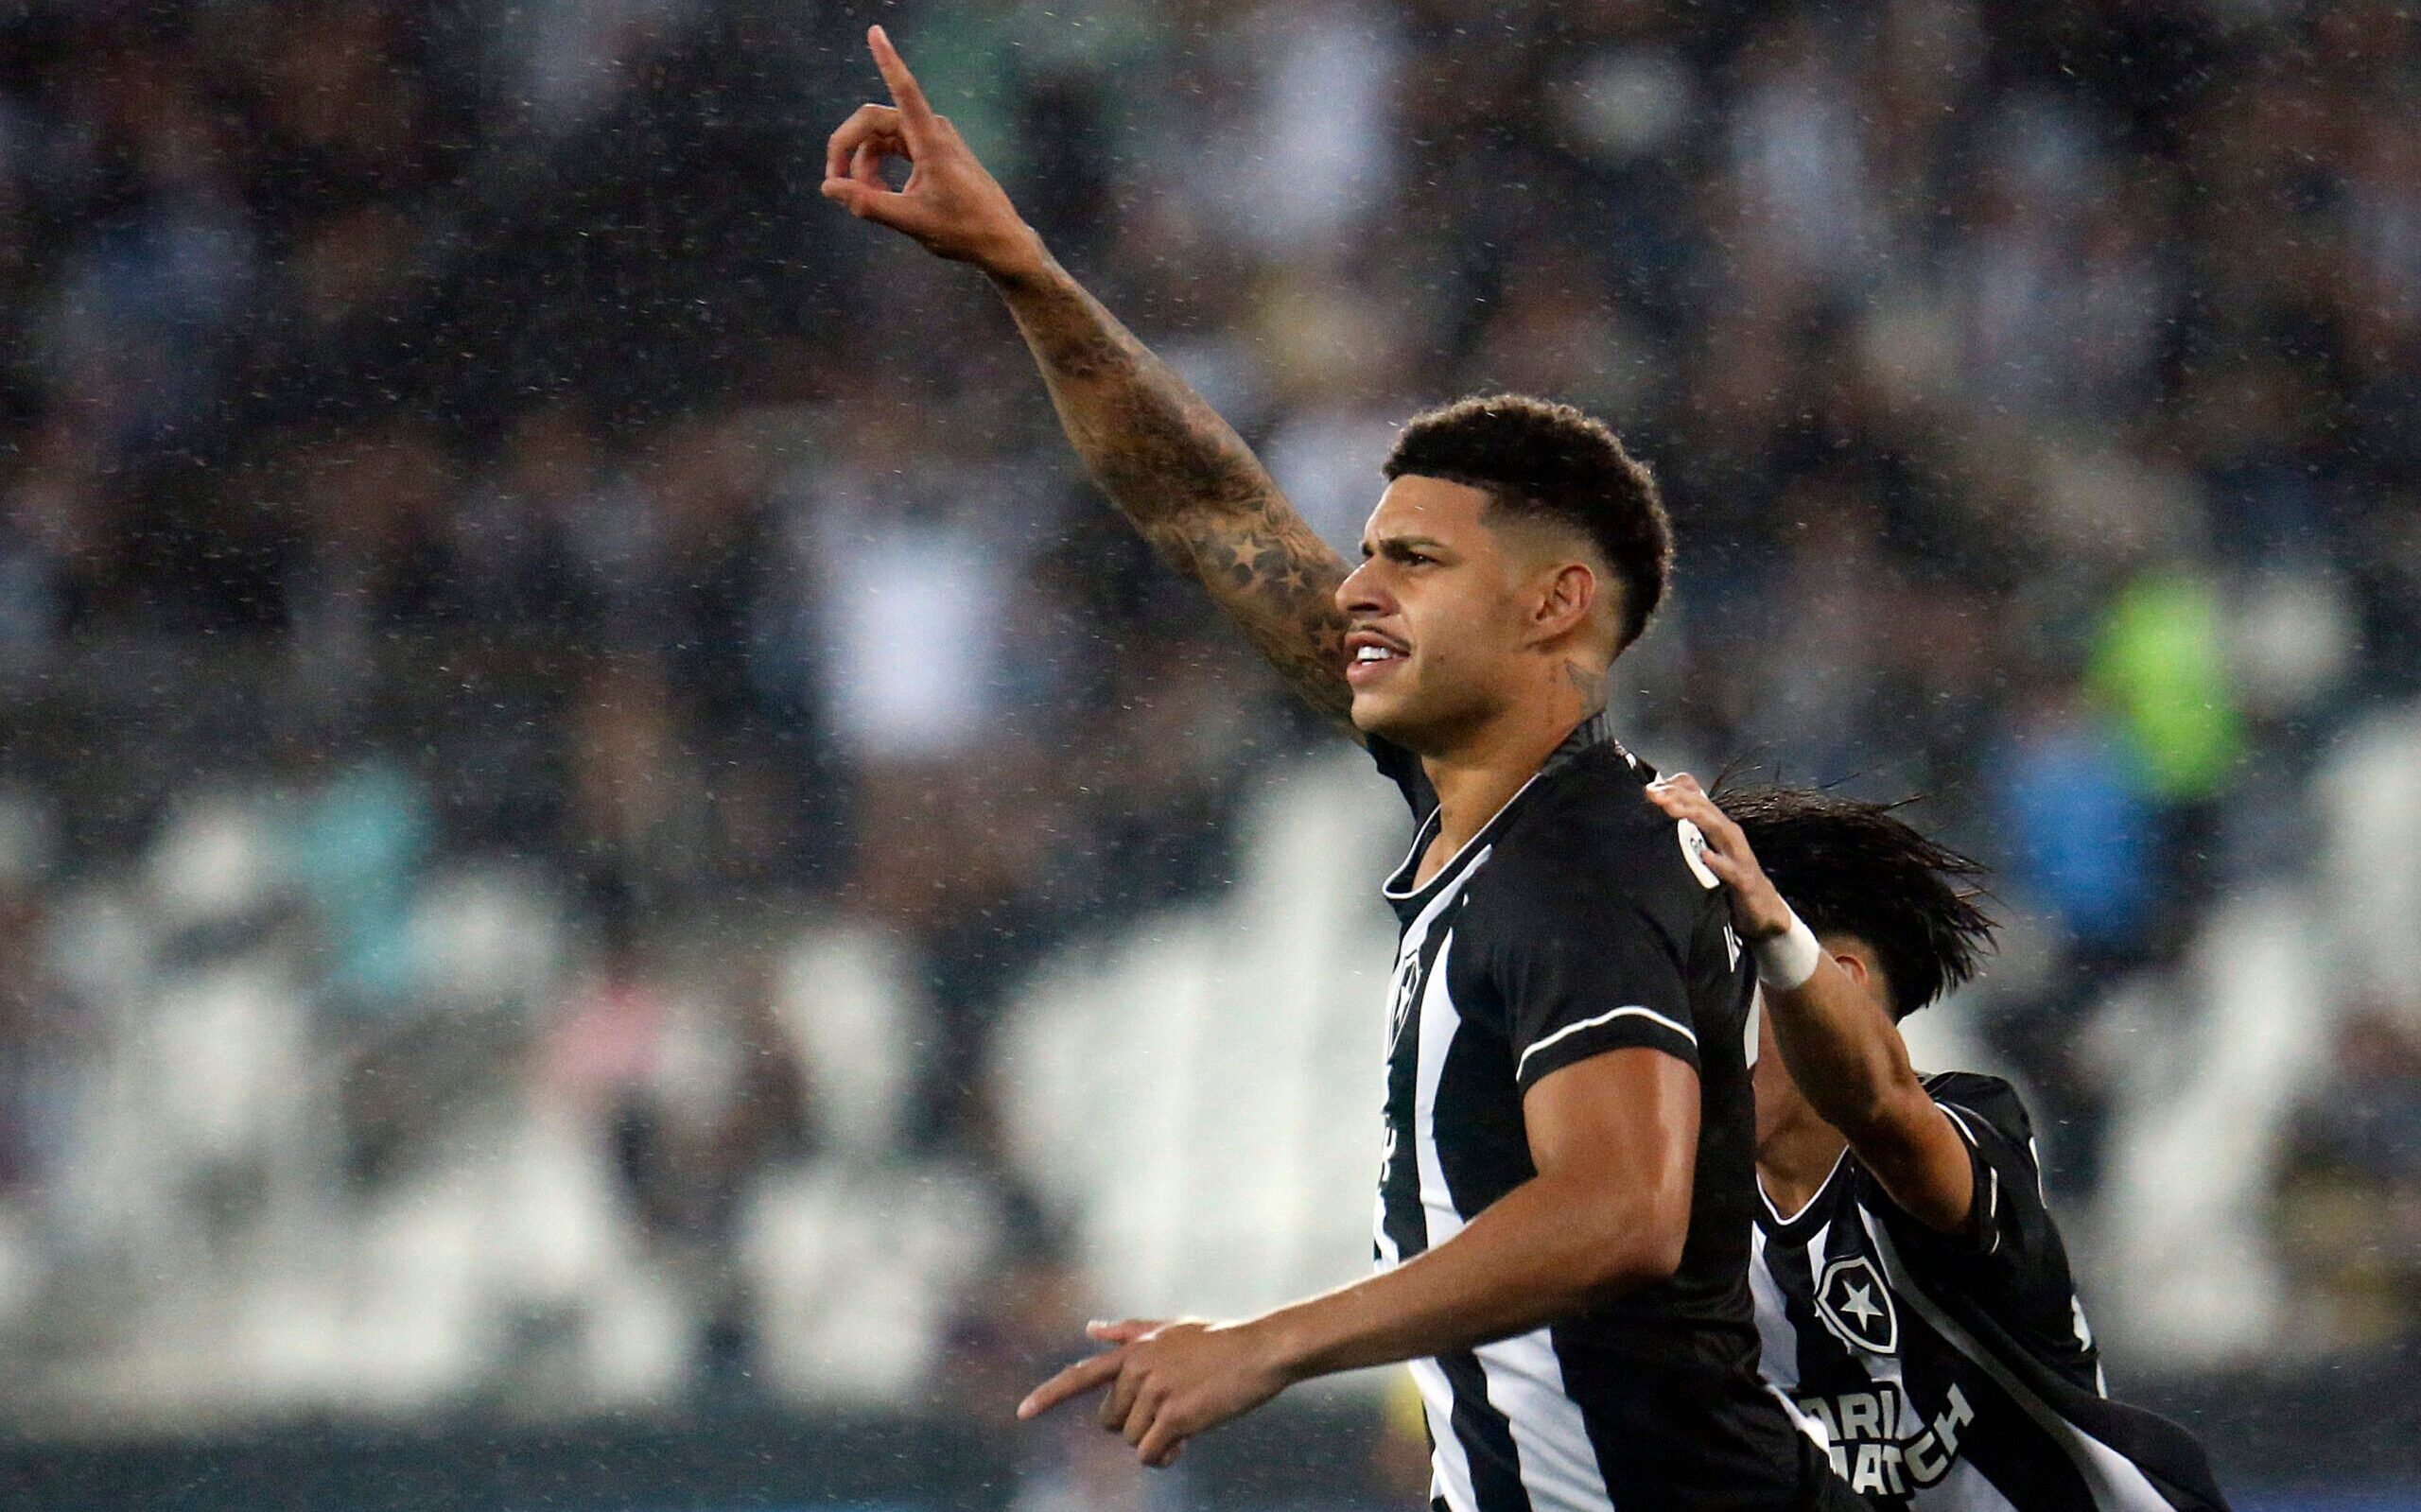 Web brinca após empate do Botafogo: 'Segovinha não joga bola e não